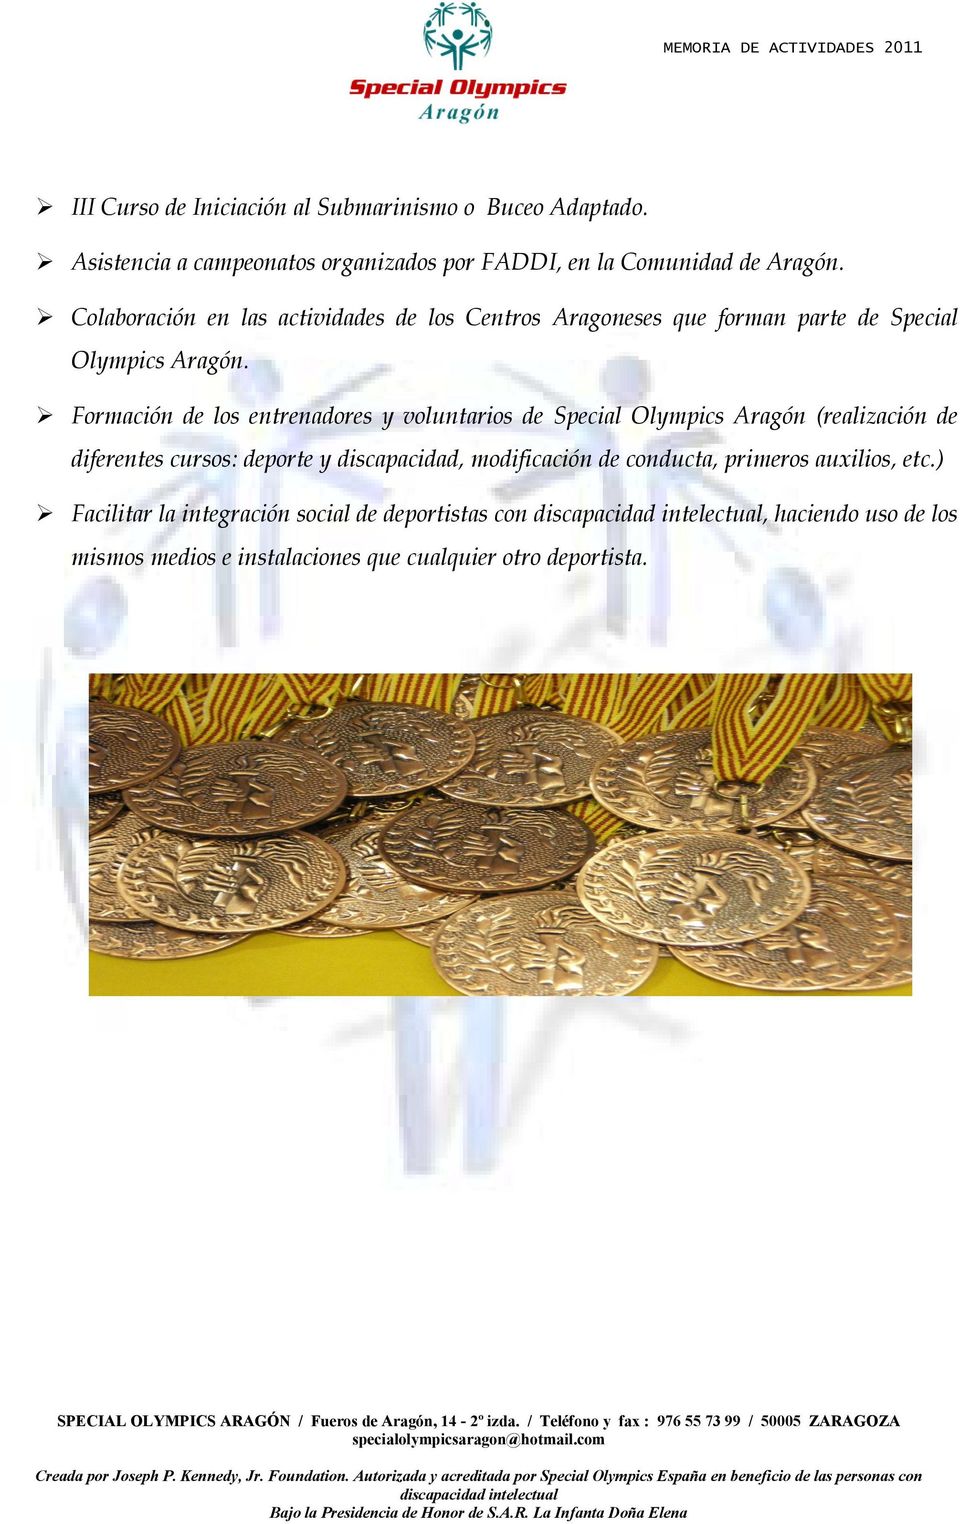 Formación de los entrenadores y voluntarios de Special Olympics Aragón (realización de diferentes cursos: deporte y discapacidad,